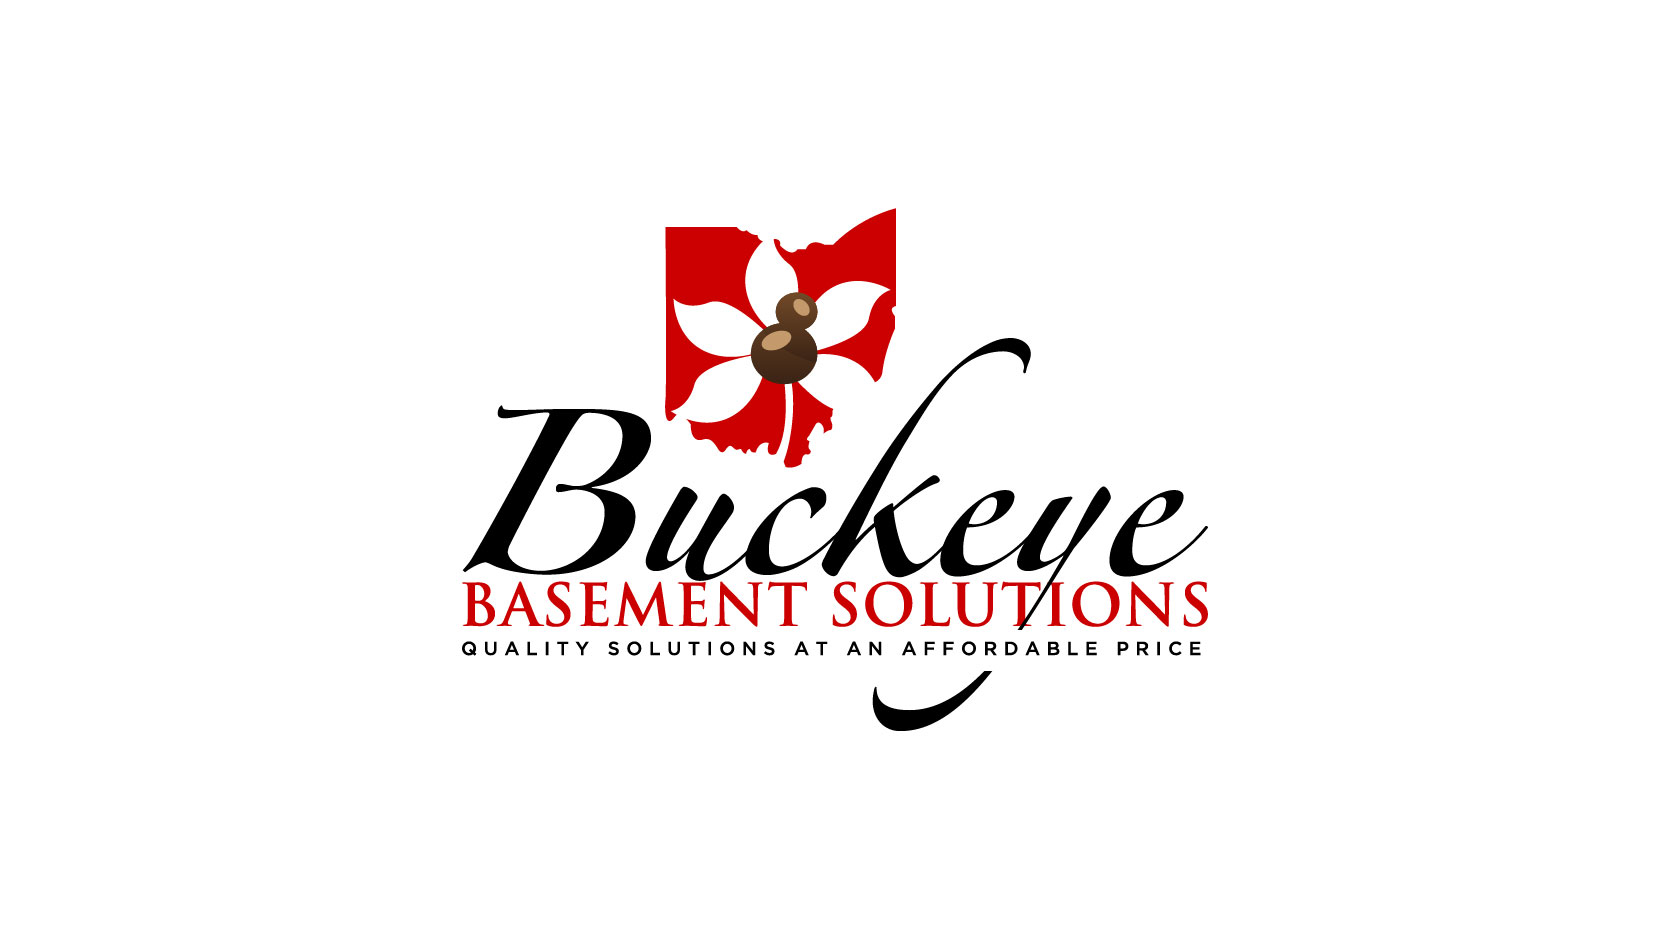 Buckeye Basement Solutions Logo